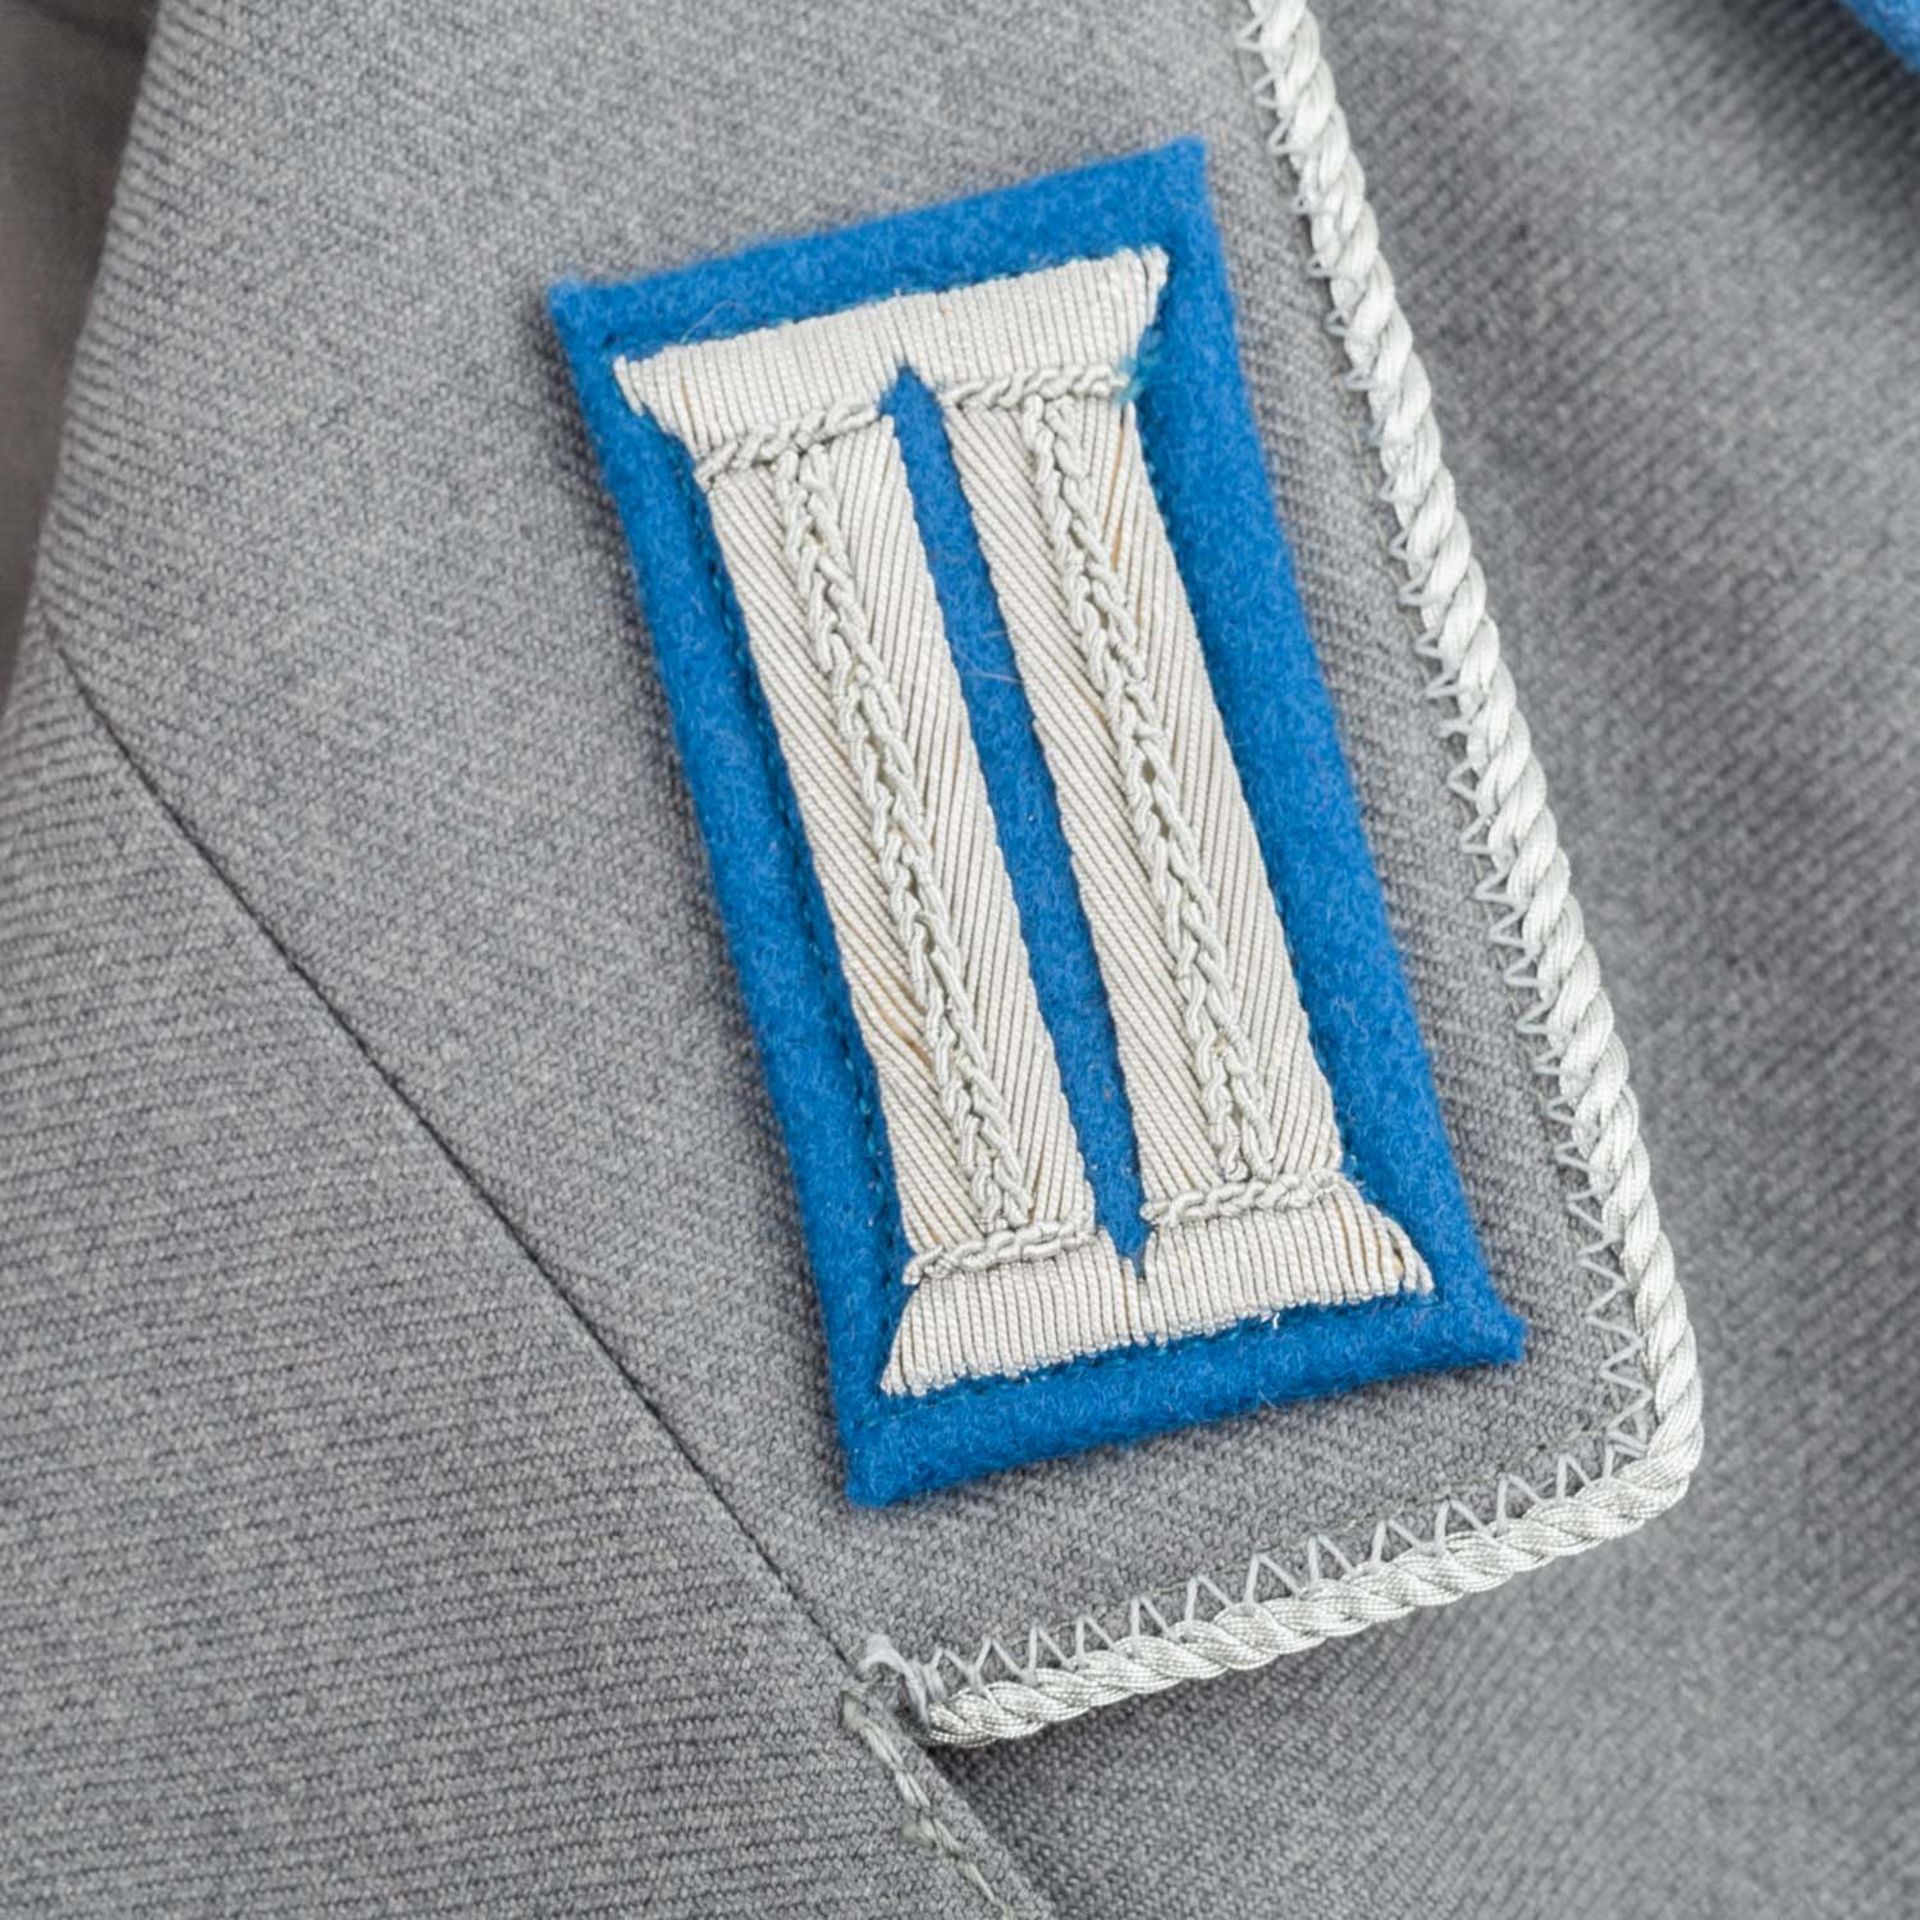 Uniformen - Graue Dienstjacke der Bundeswehr, - Bild 4 aus 7